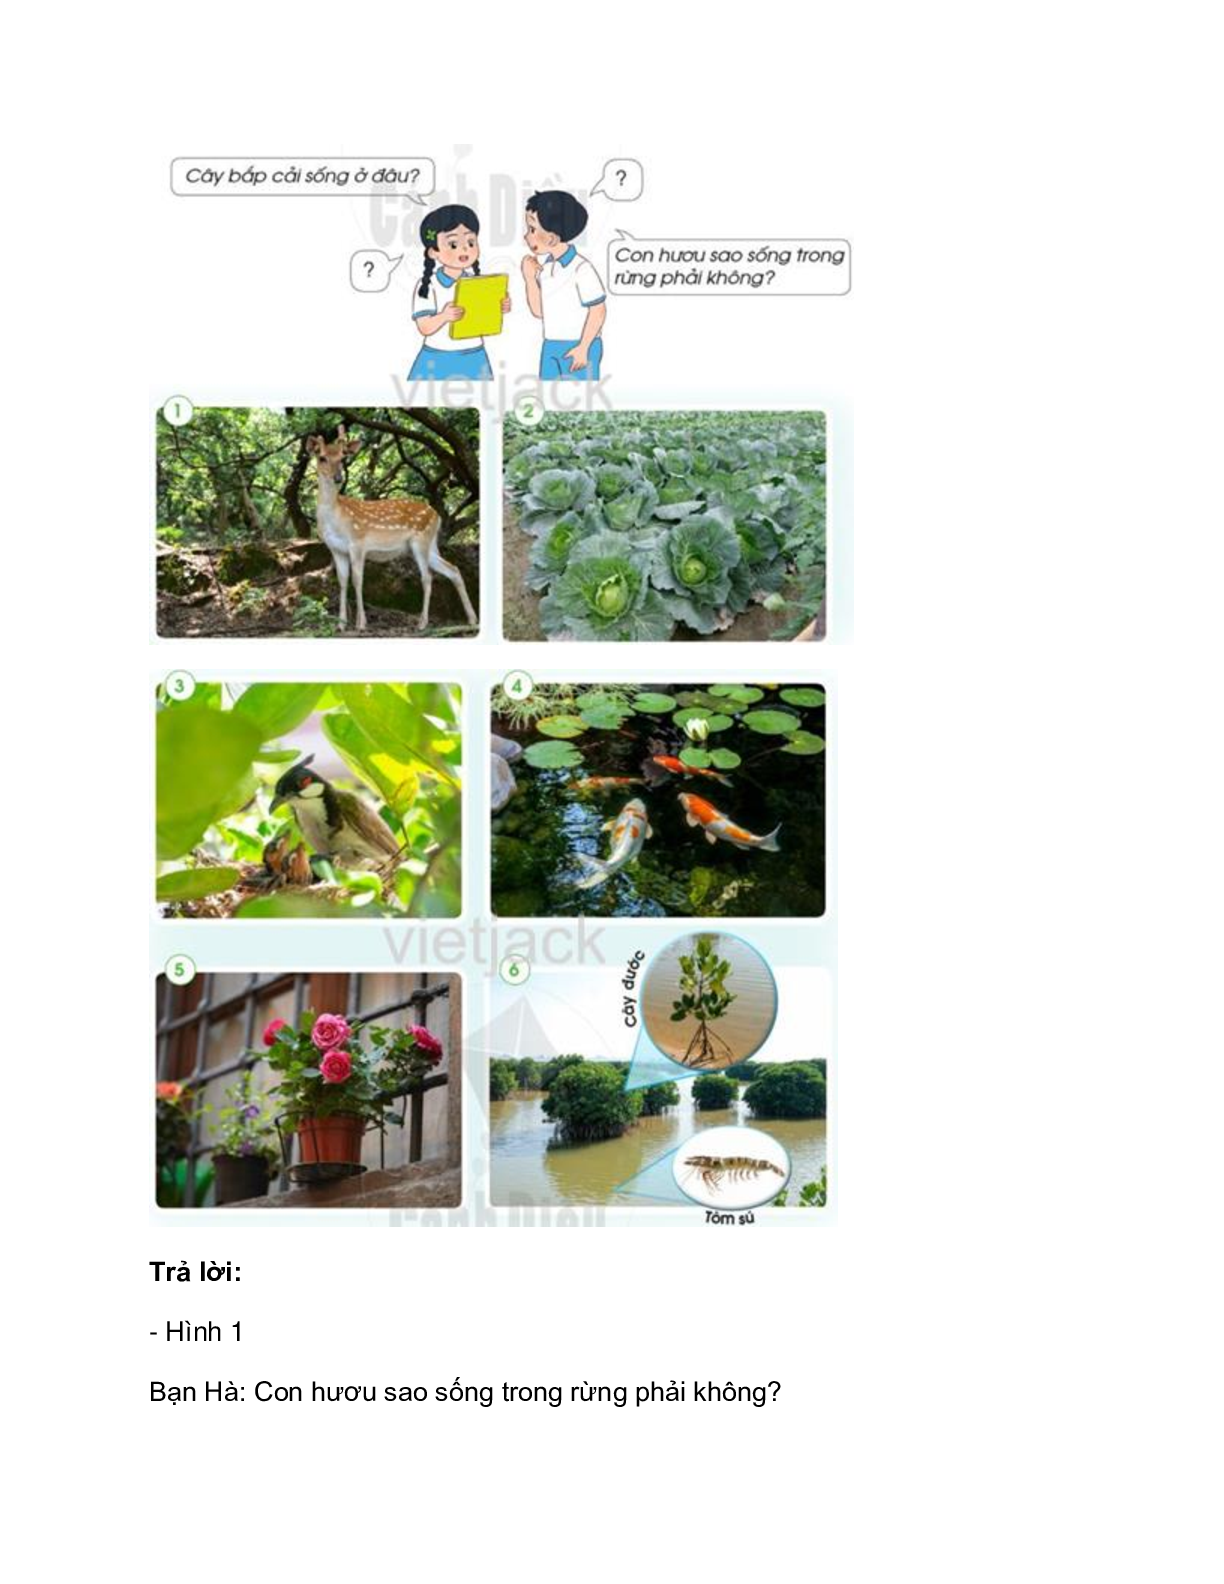 Giải SGK Tự nhiên và Xã hội lớp 2 trang 62, 63, 64, 65, 66, 67 Bài 11: Môi trường sống của thực vật và động vật – Cánh diều (trang 2)